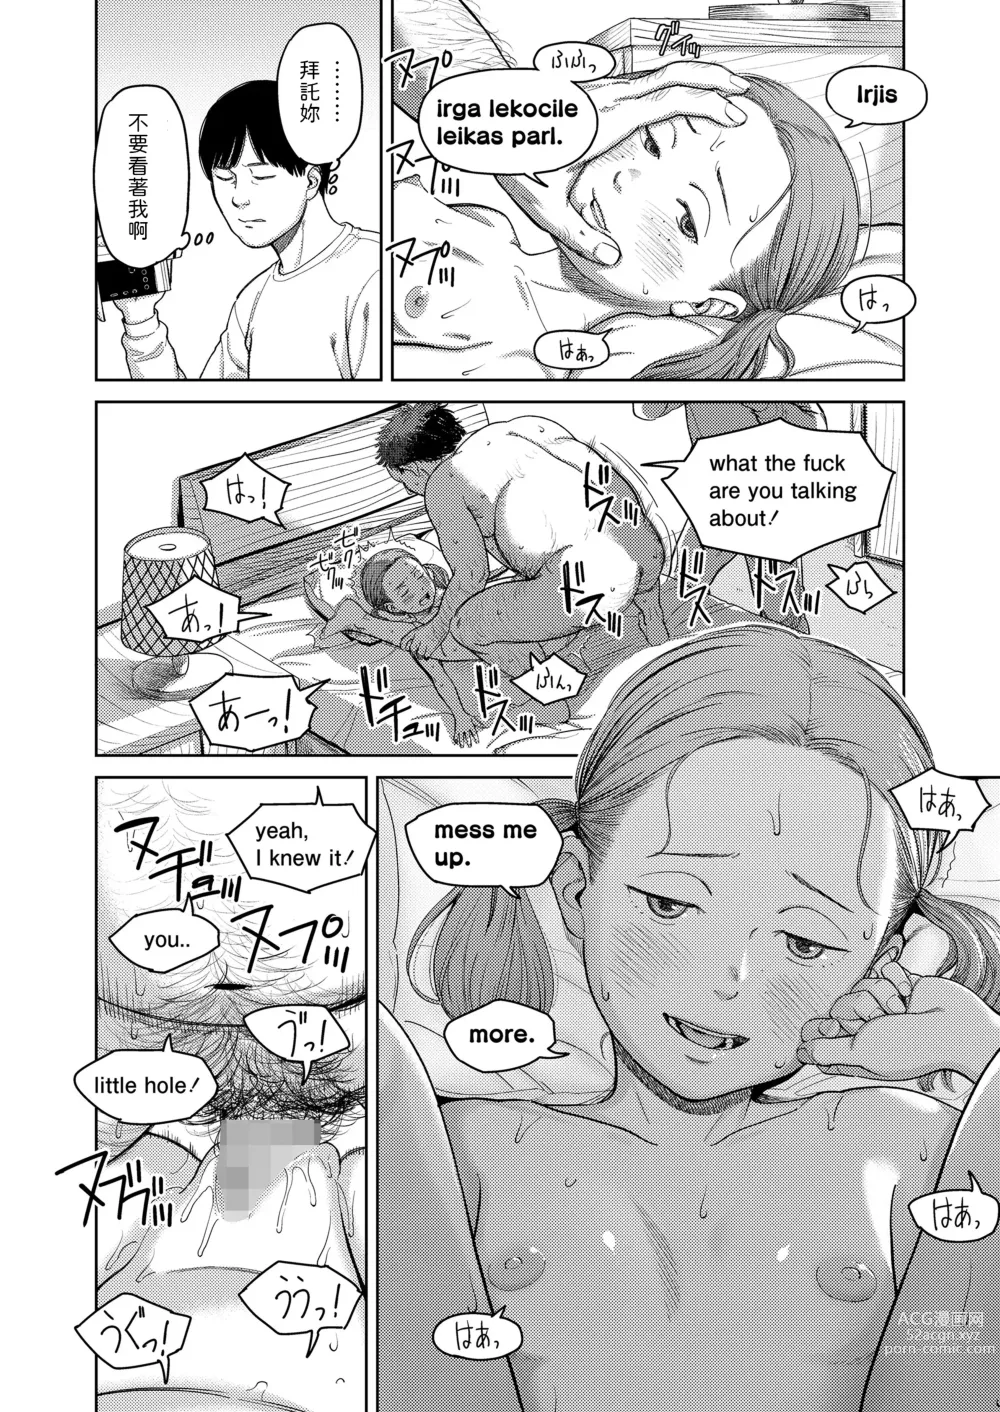 Page 26 of manga I,L,L,E Zenpen